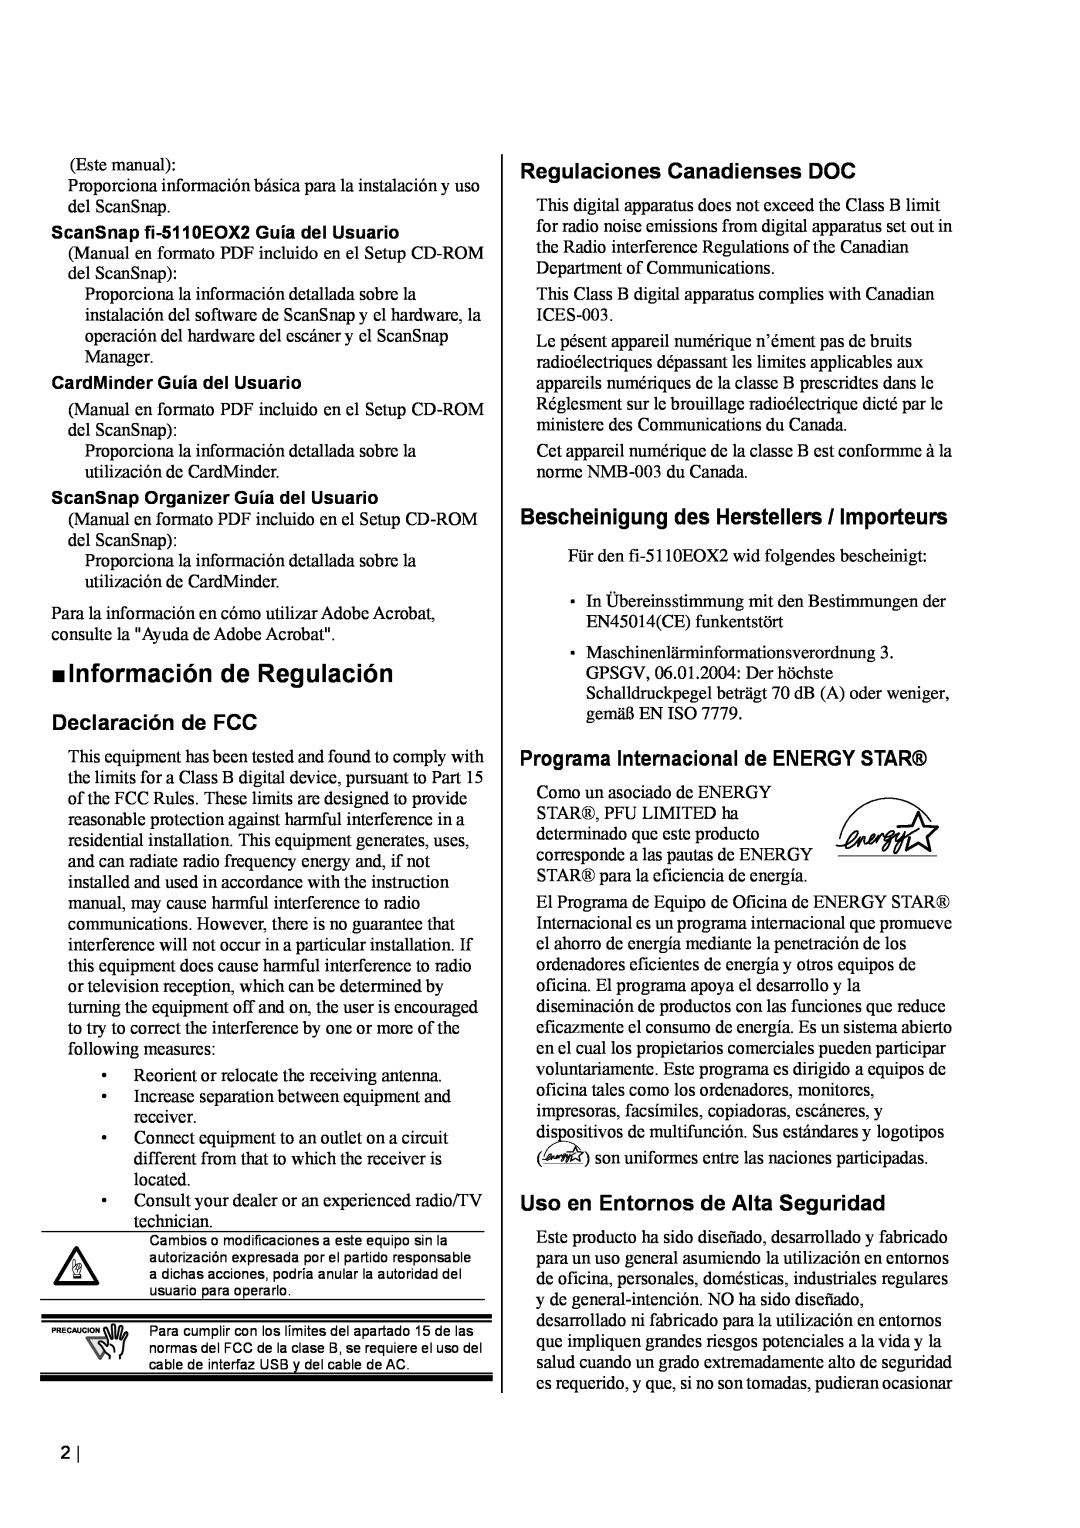 Fujitsu fi-5110EOX2 manual „ Información de Regulación, Declaración de FCC, Regulaciones Canadienses DOC 